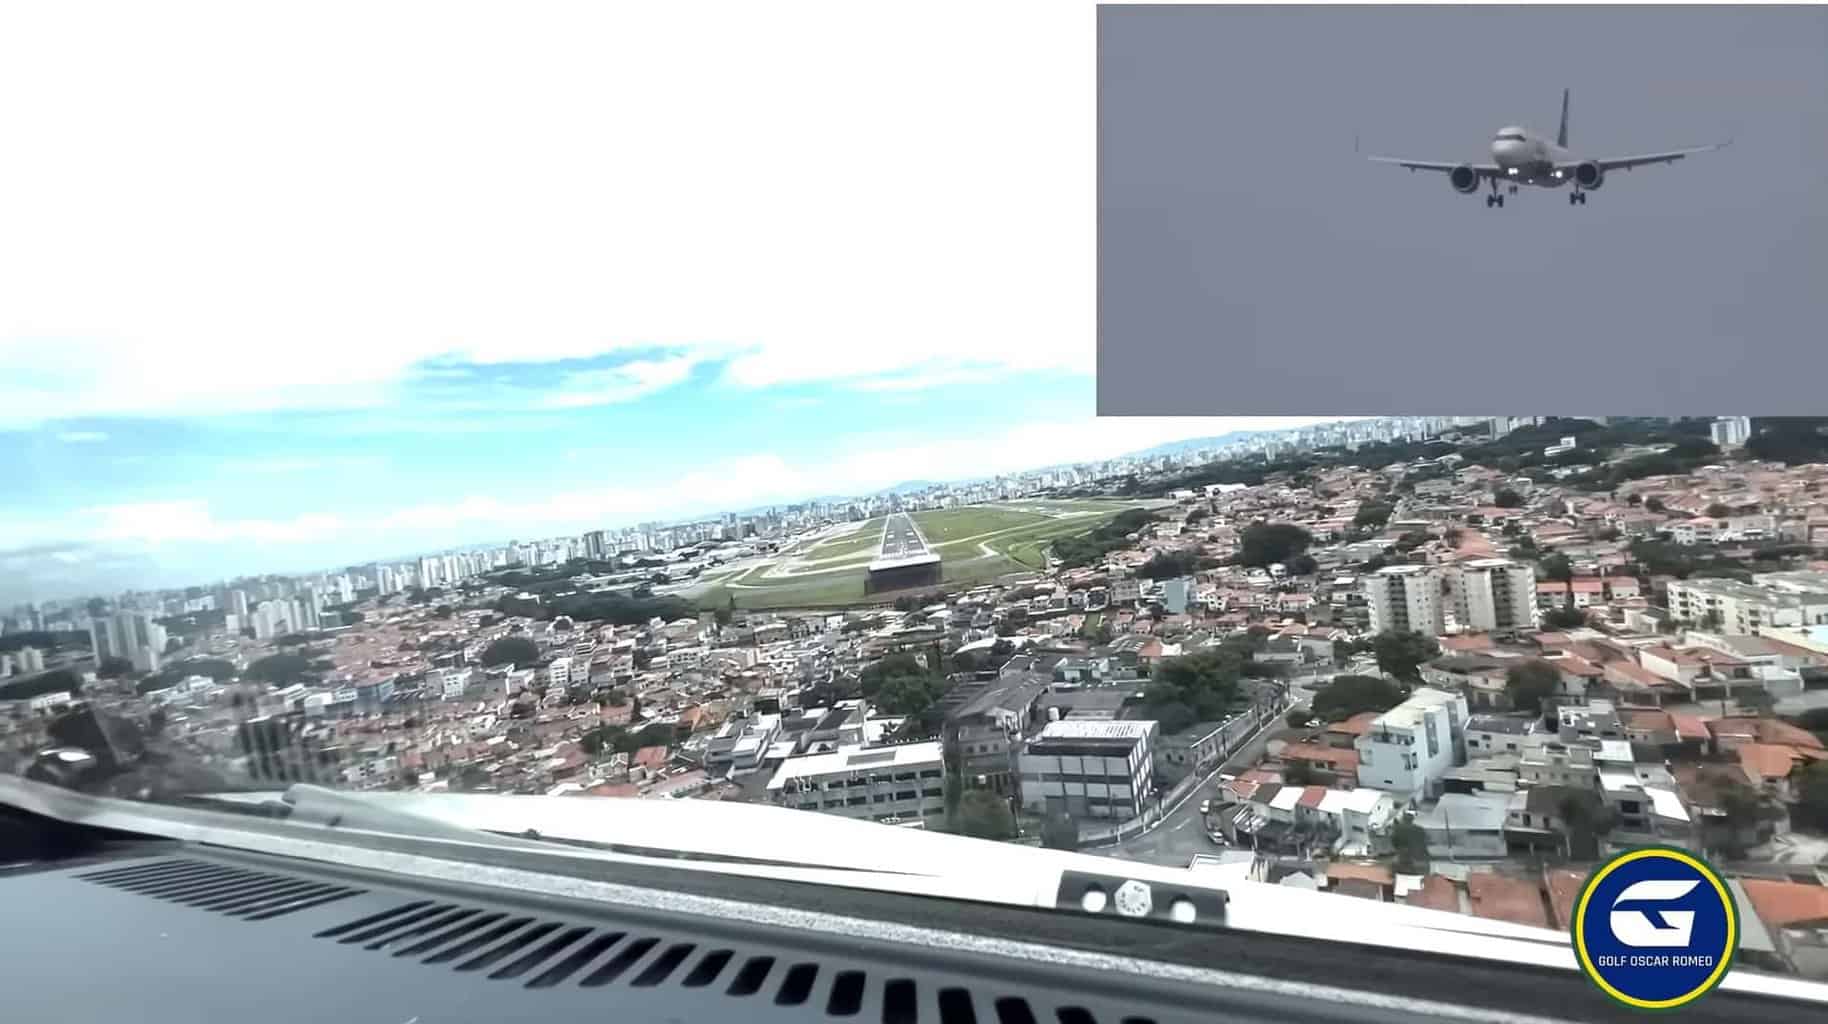 Golf Oscar Romeo YouTube Youtuber pilotos avião A320neo Azul congonhas